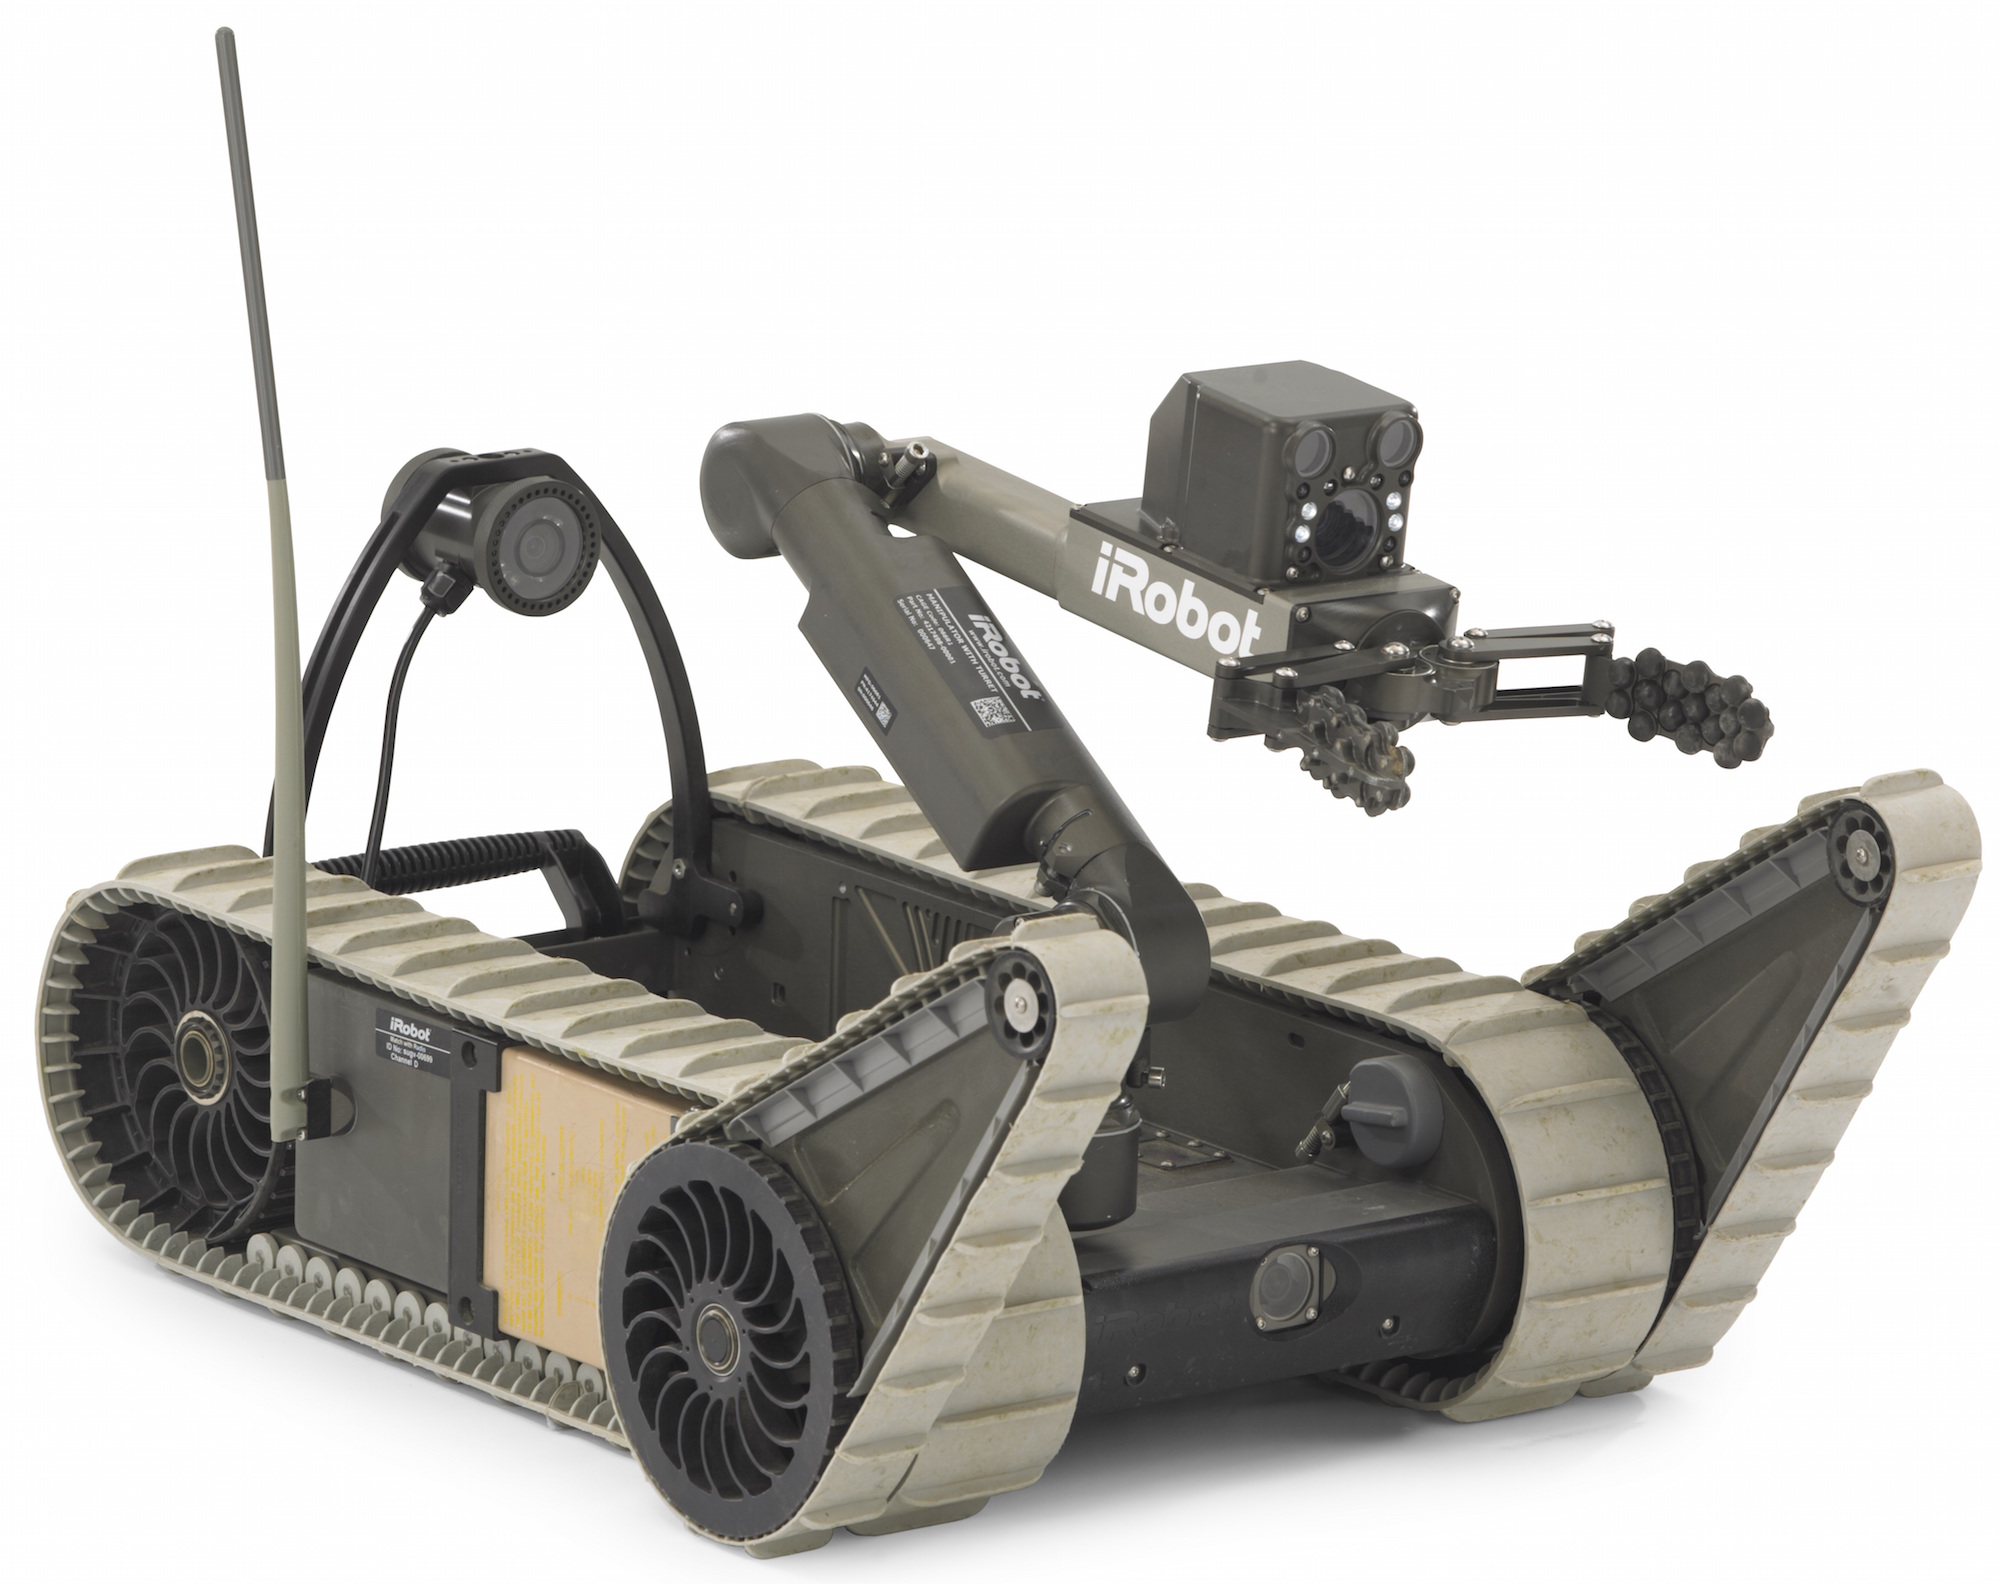 Шагающая камера. IROBOT SUGV. 110 Firstlook робот. Военные роботы IROBOT. Робот сапер Варан.